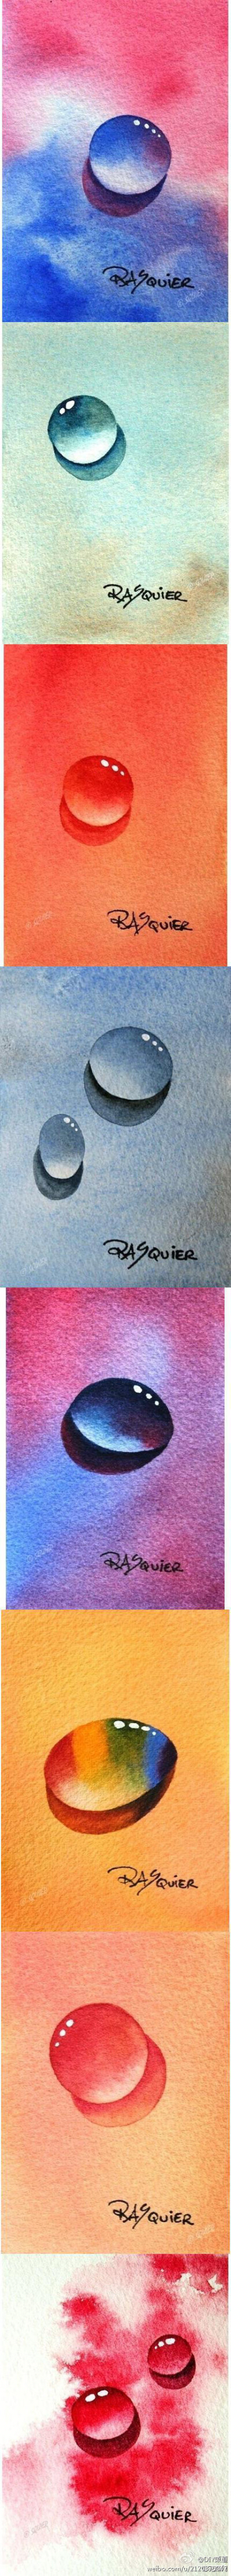 来自Rasquier的水珠系列水彩作品。能画出这样的水滴的人，大概有着一颗像水珠一样澄澈柔软毫无杂质的心，美呆！手绘的力量是强大的！！！